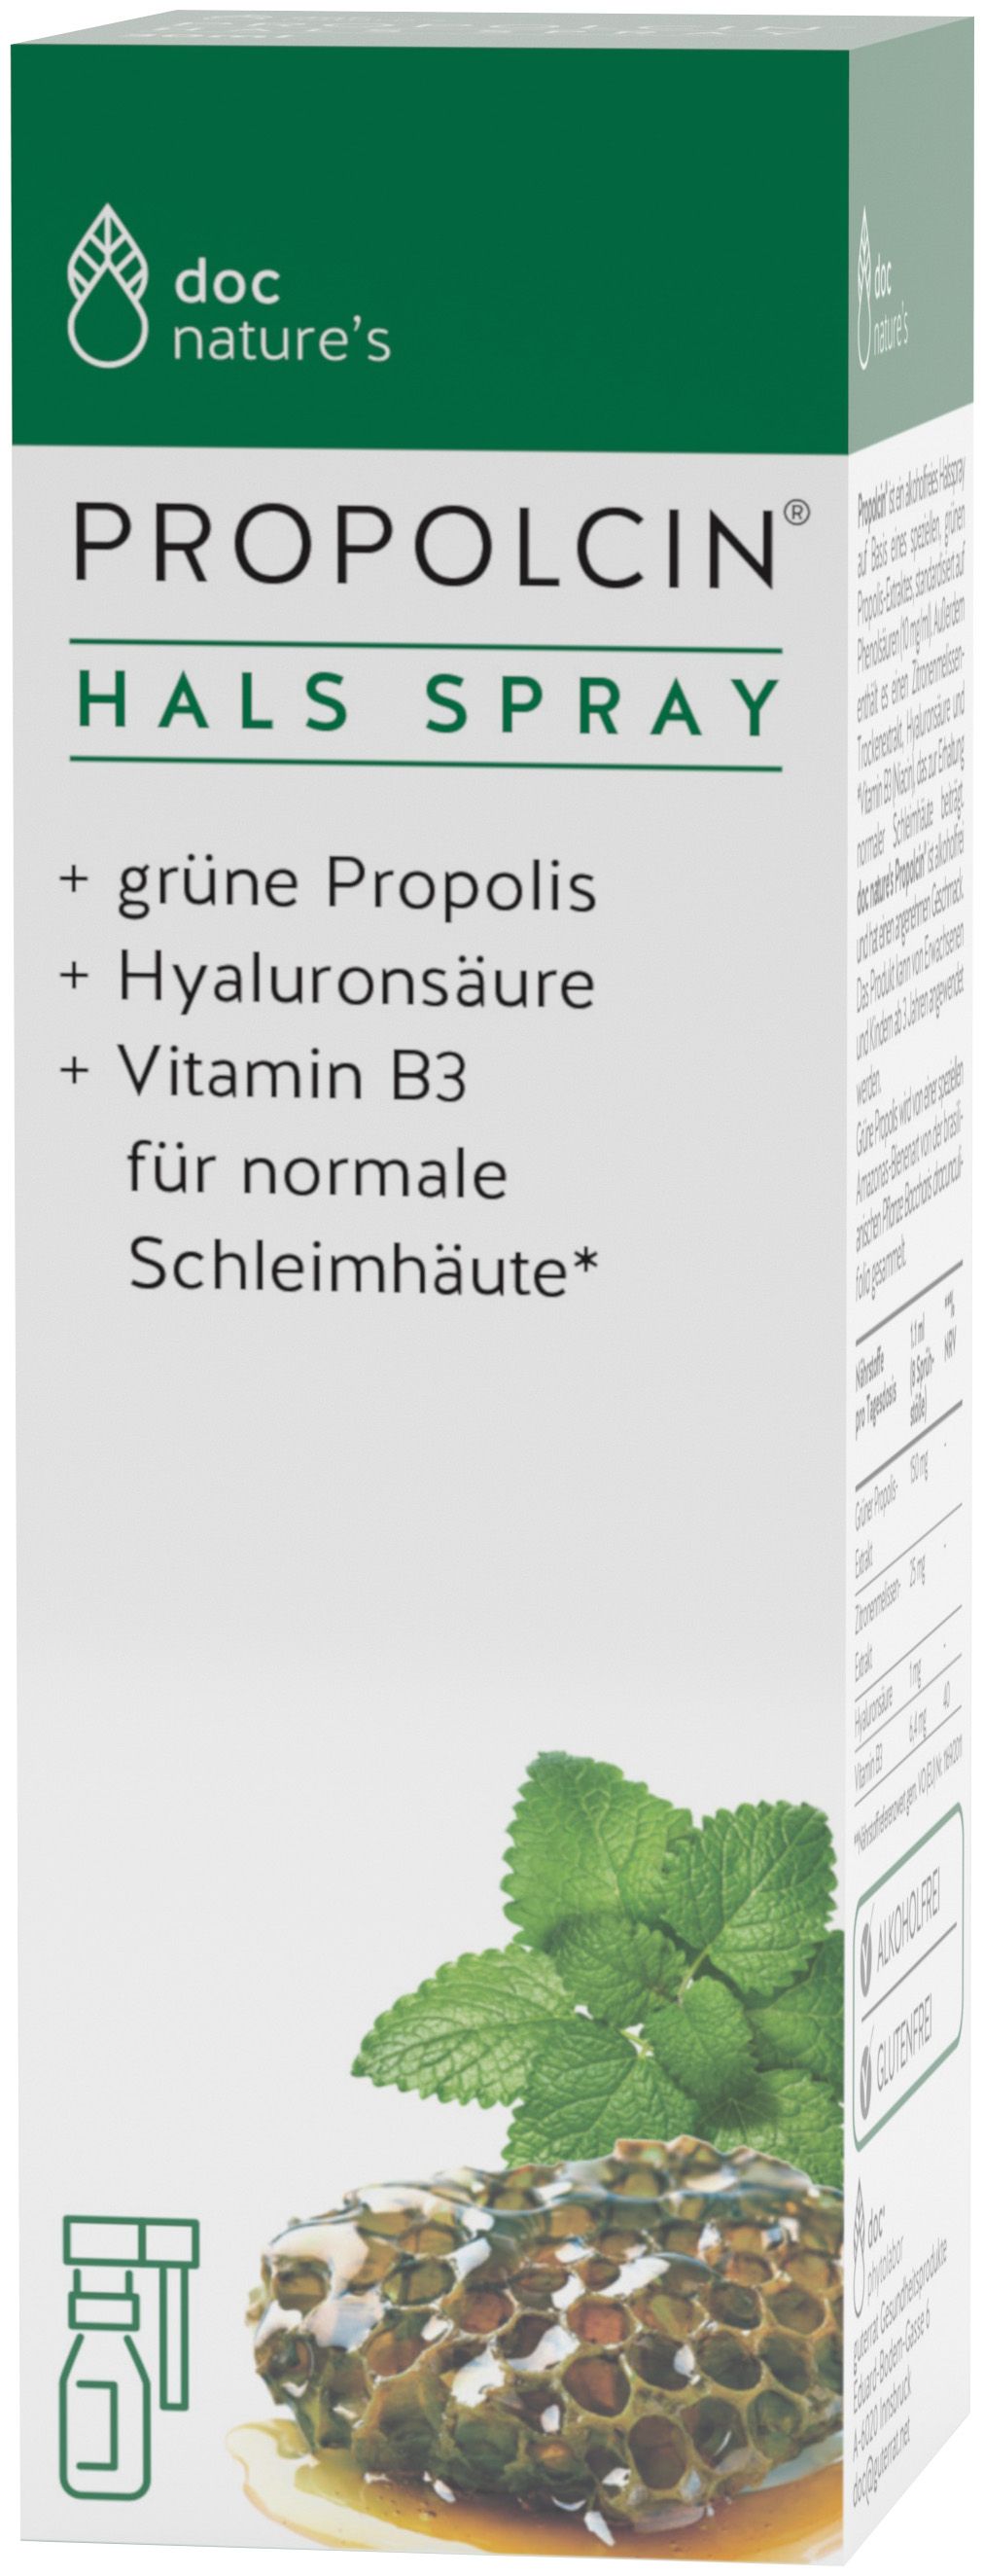 doc nature's  Propolcin® HALS SPRAY